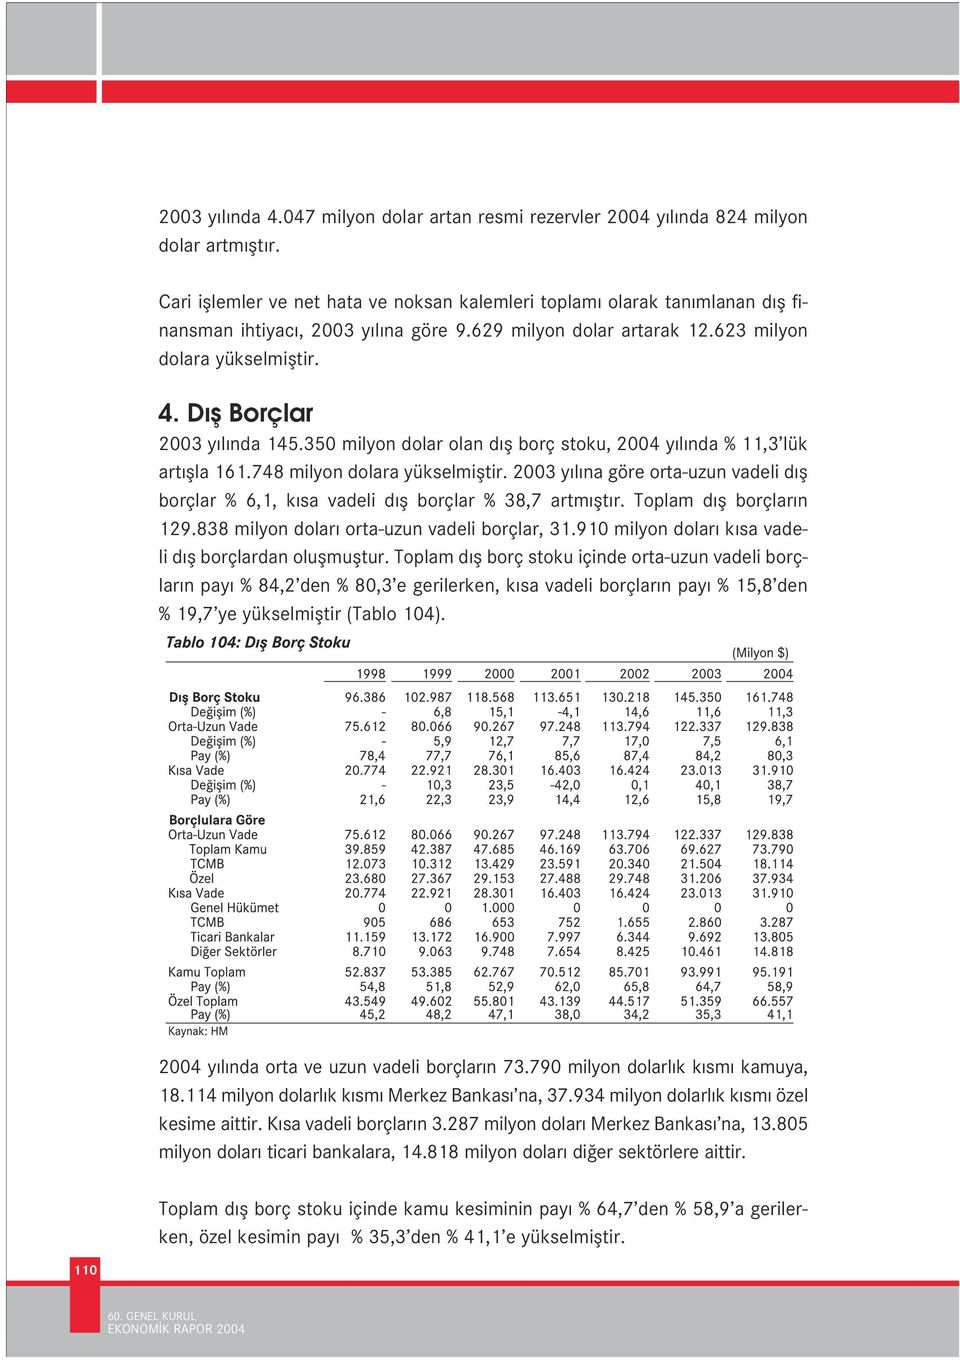 D fl Borçlar 2003 y l nda 145.350 milyon dolar olan d fl borç stoku, 2004 y l nda % 11,3 lük art flla 161.748 milyon dolara yükselmifltir.